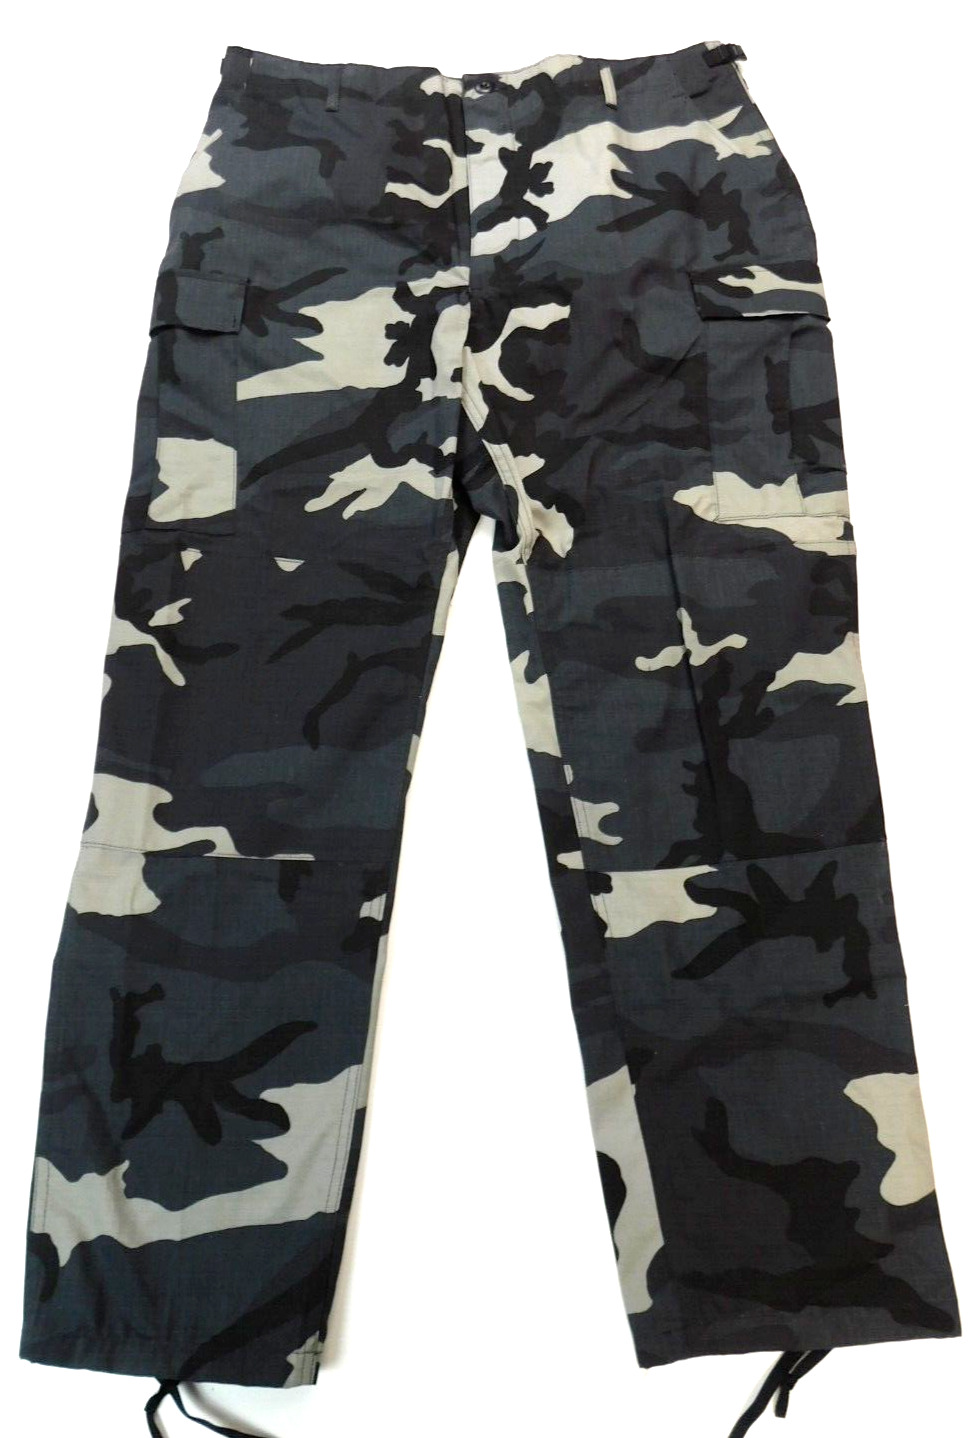 Propper Urban Pants X-Large Long Public Safety Uniform Combat Black Ripstop Camo